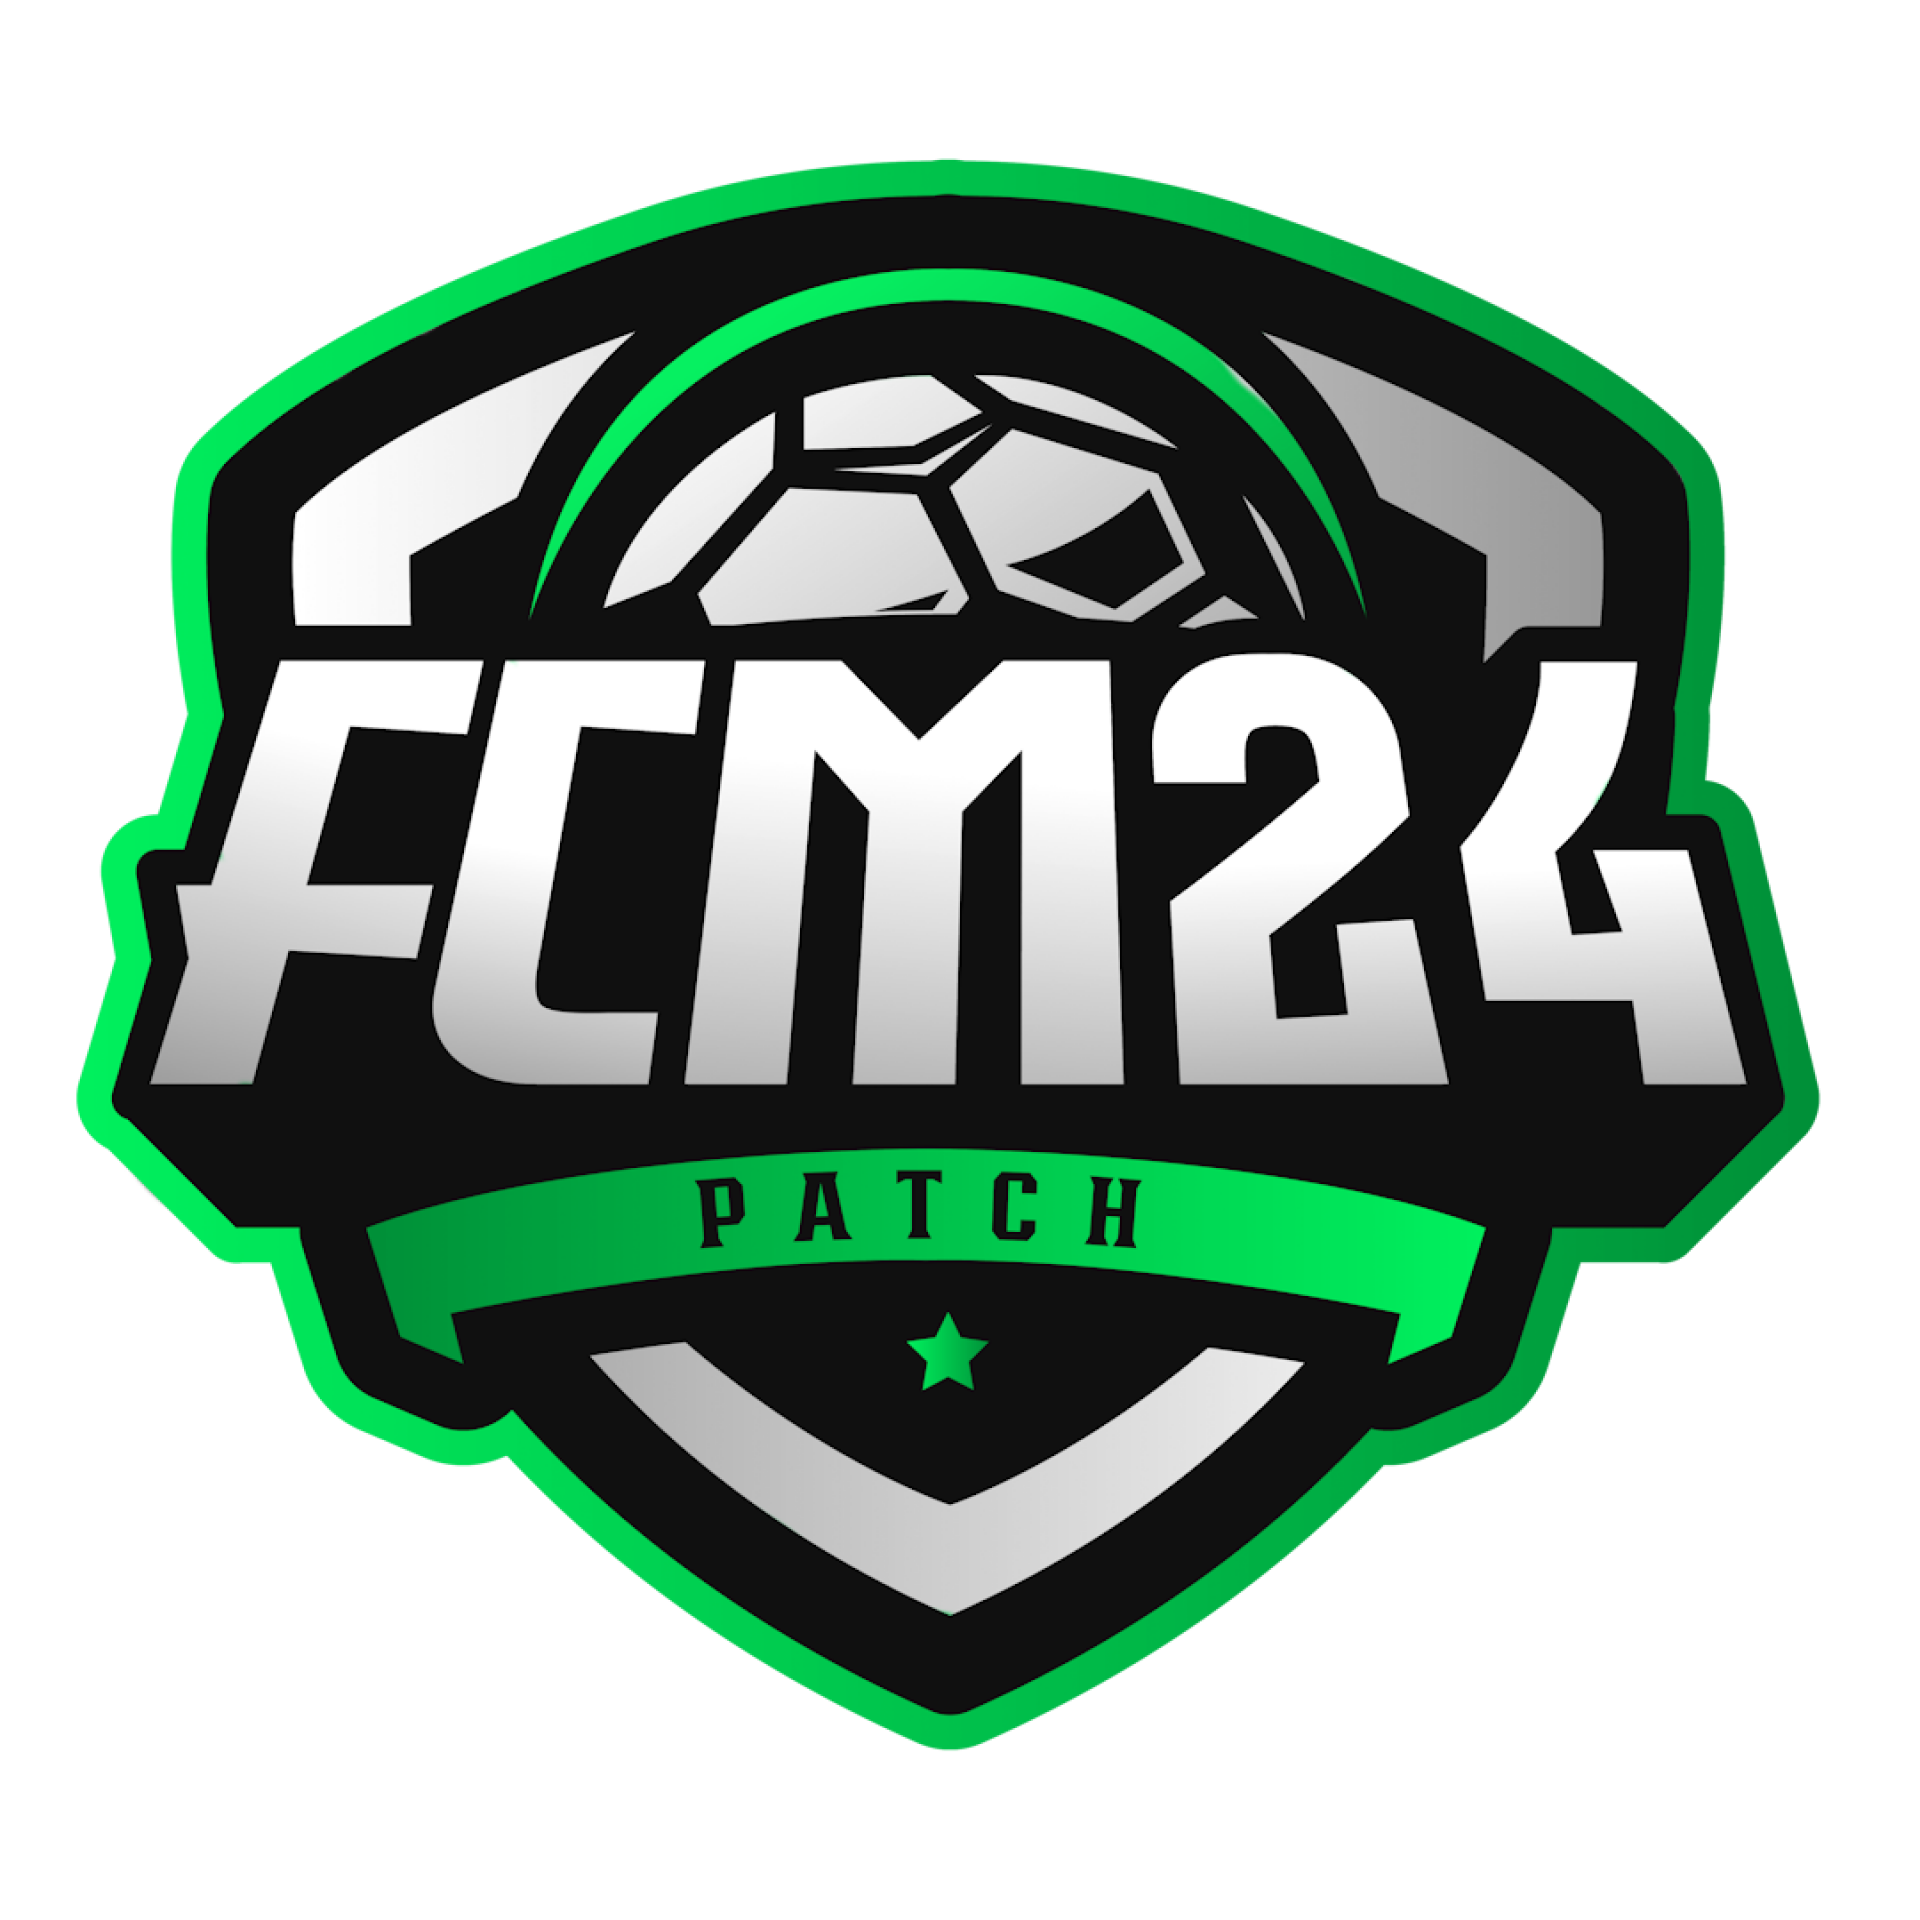 FCM 24 - Patch para EAFC 24 PC - Suporte e atualizações por 6 meses